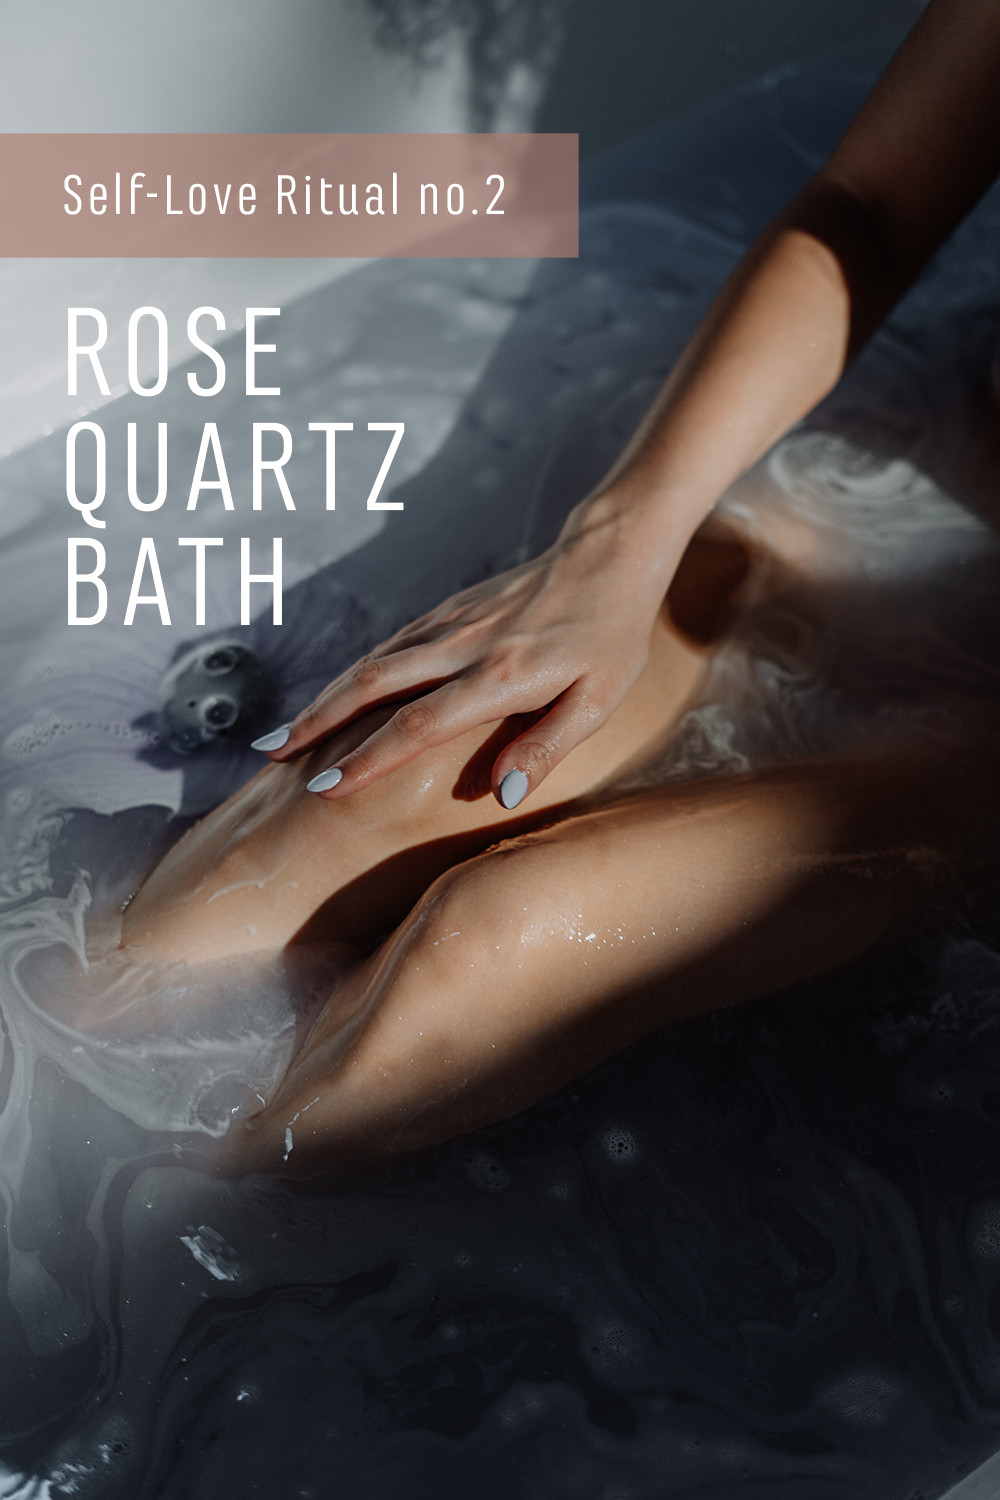 Self-love ritual #2: Rose Quartz bath